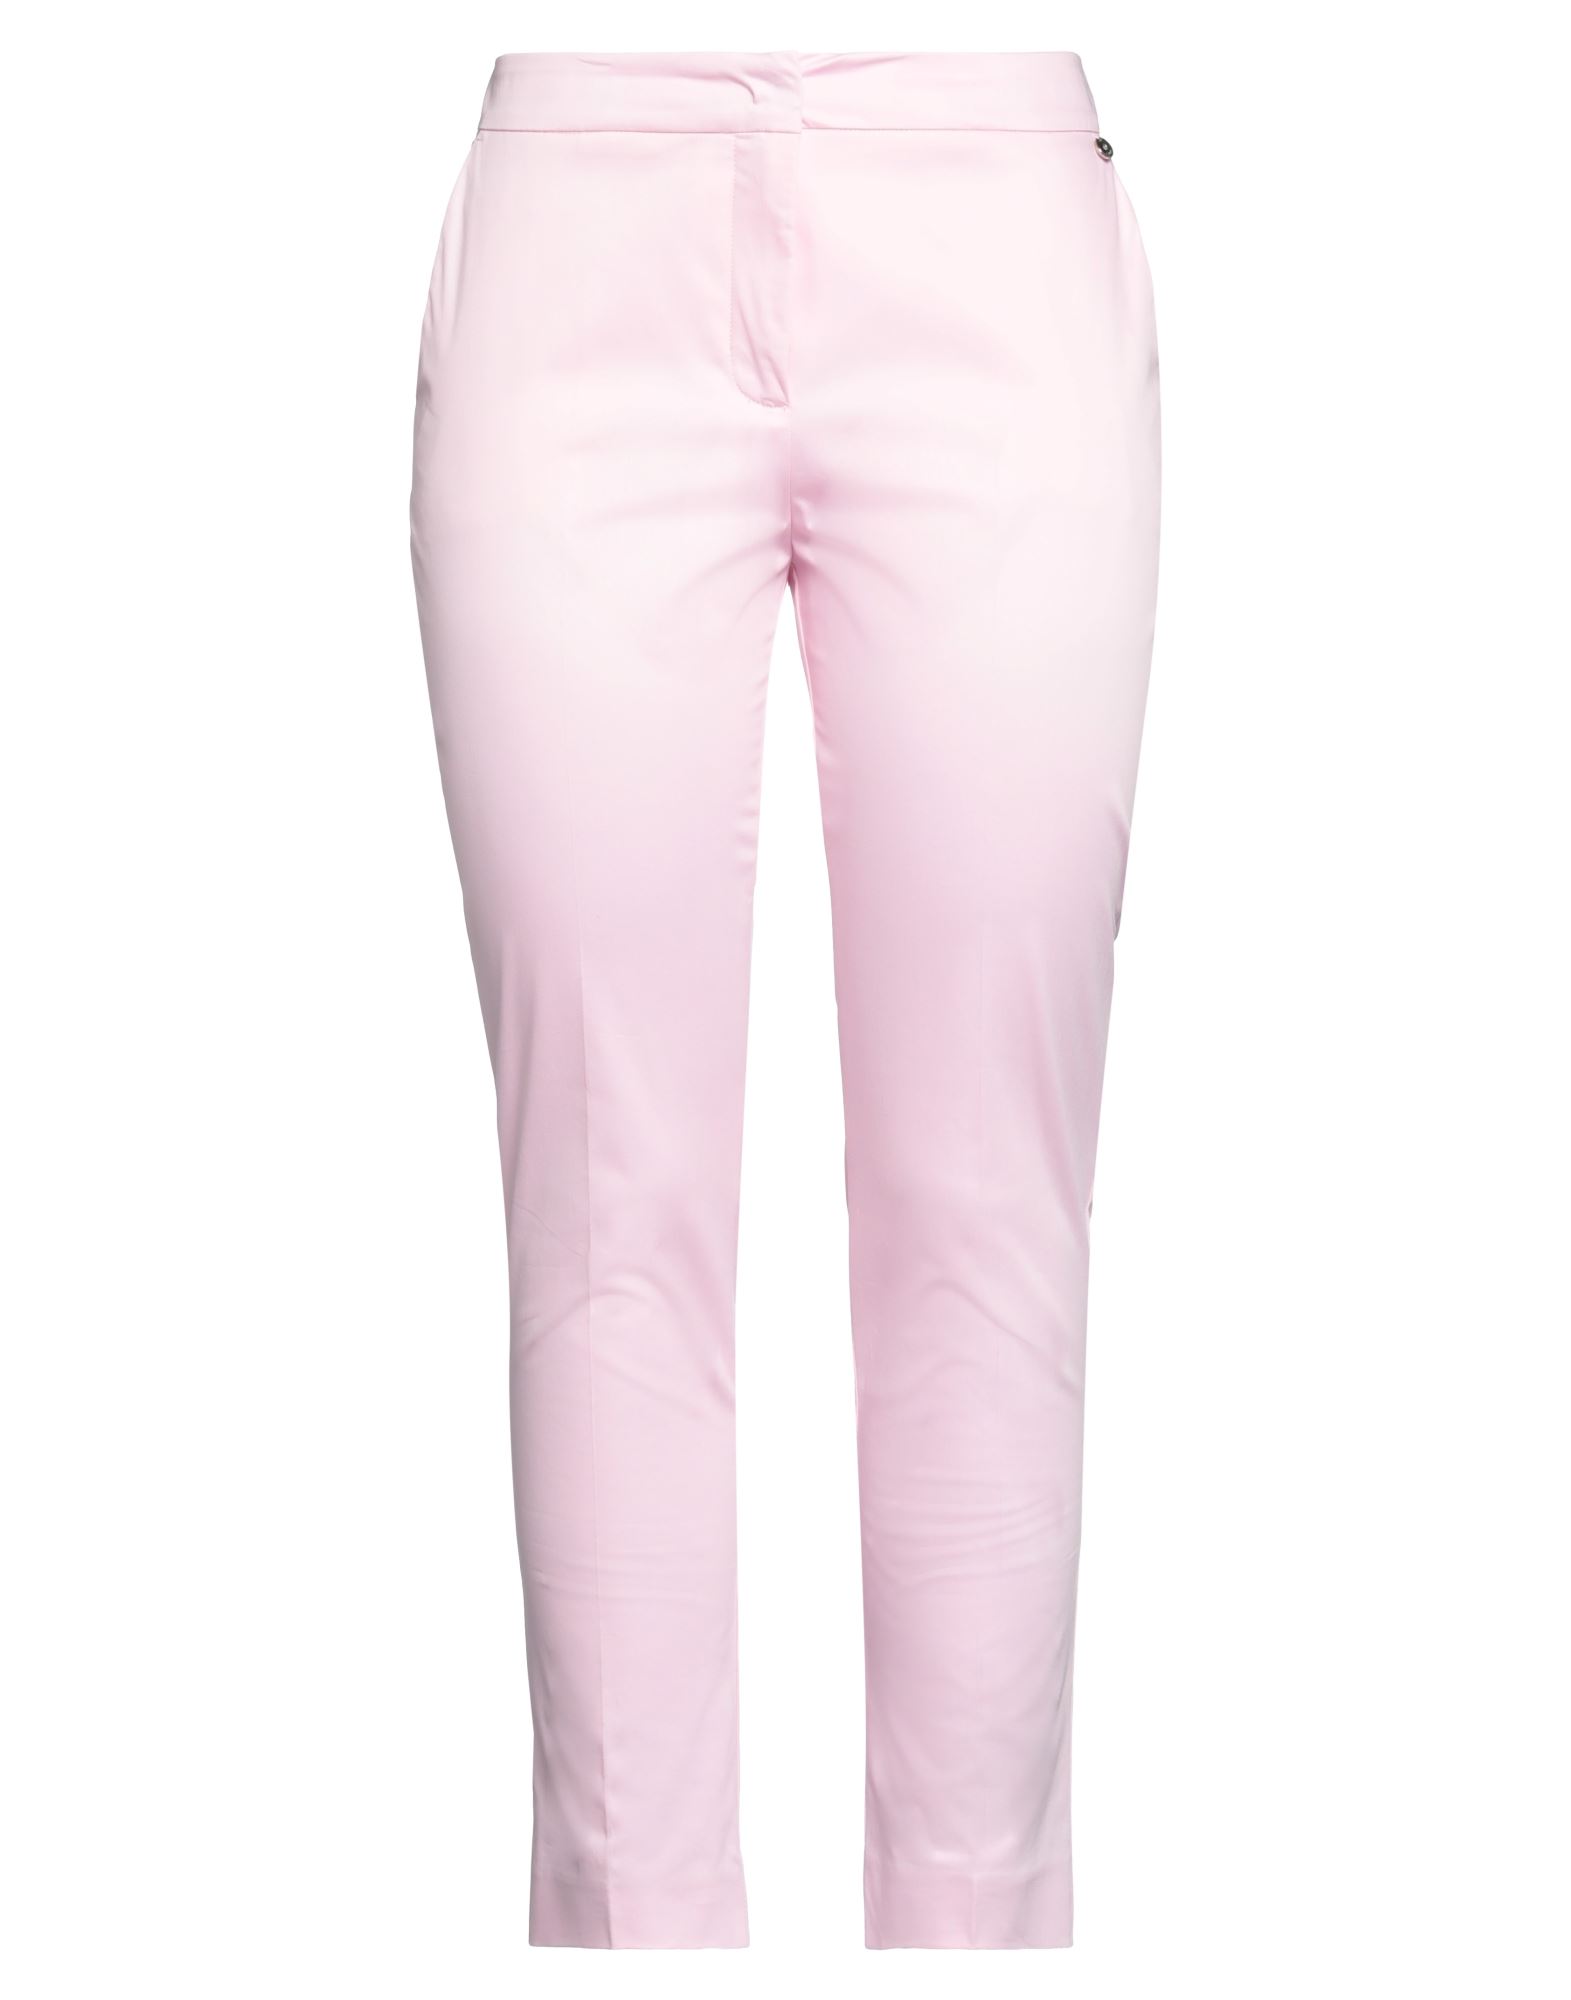 Liu •jo Woman Pants Pink Size 2 Cotton, Elastane